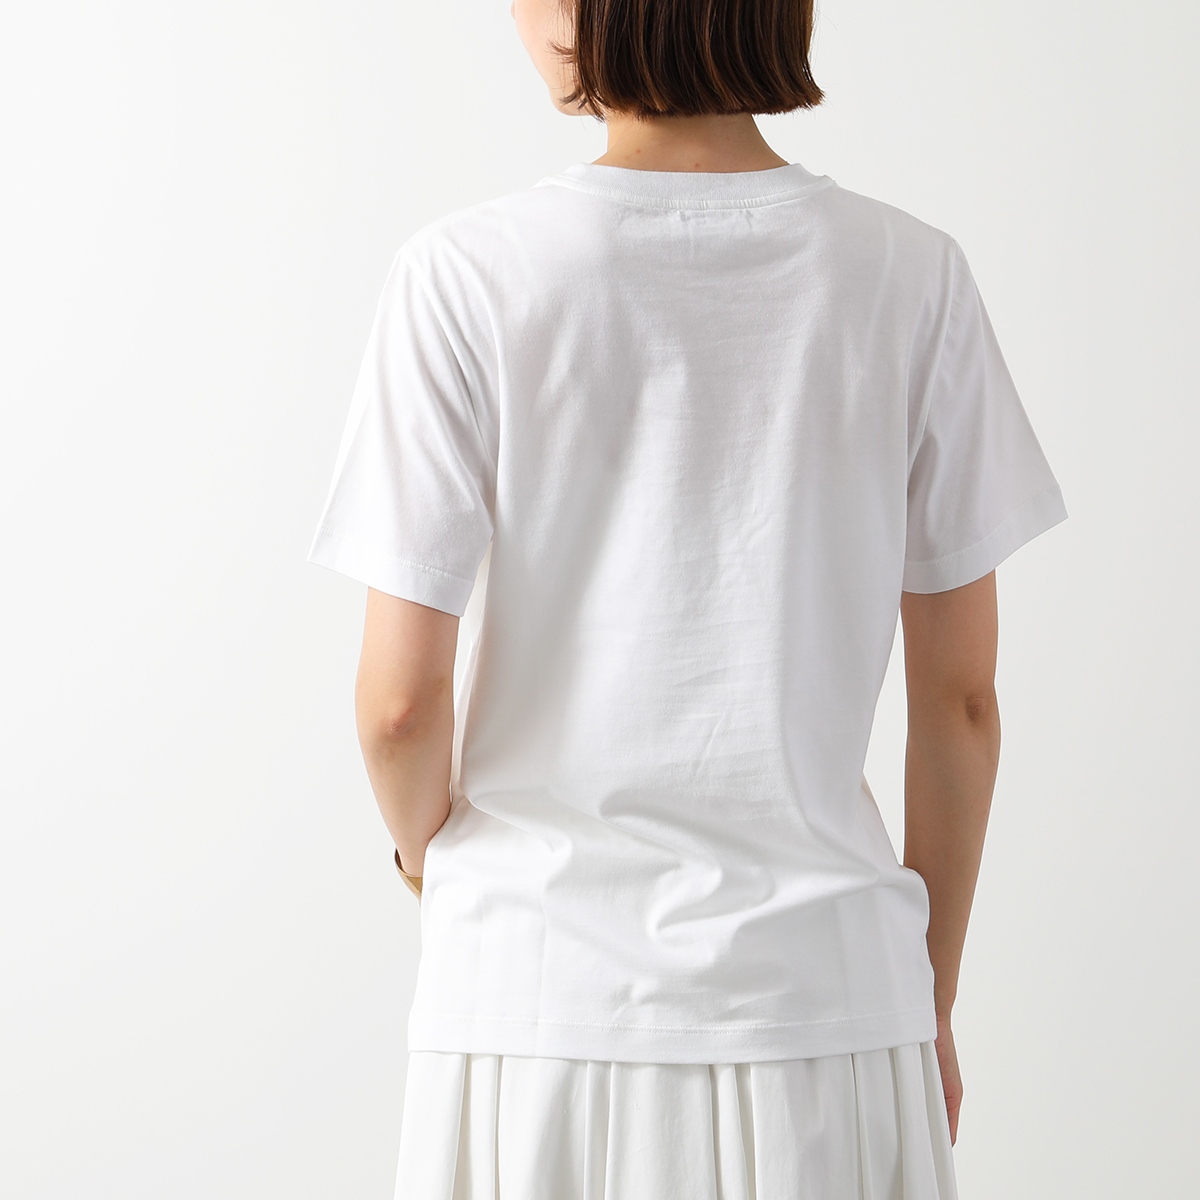 SALVATORE FERRAGAMO フェラガモ Tシャツ 11 C466 H レディース 半袖 カットソー ロゴT コットン クルーネック  ホワイト | インポートセレクト musee